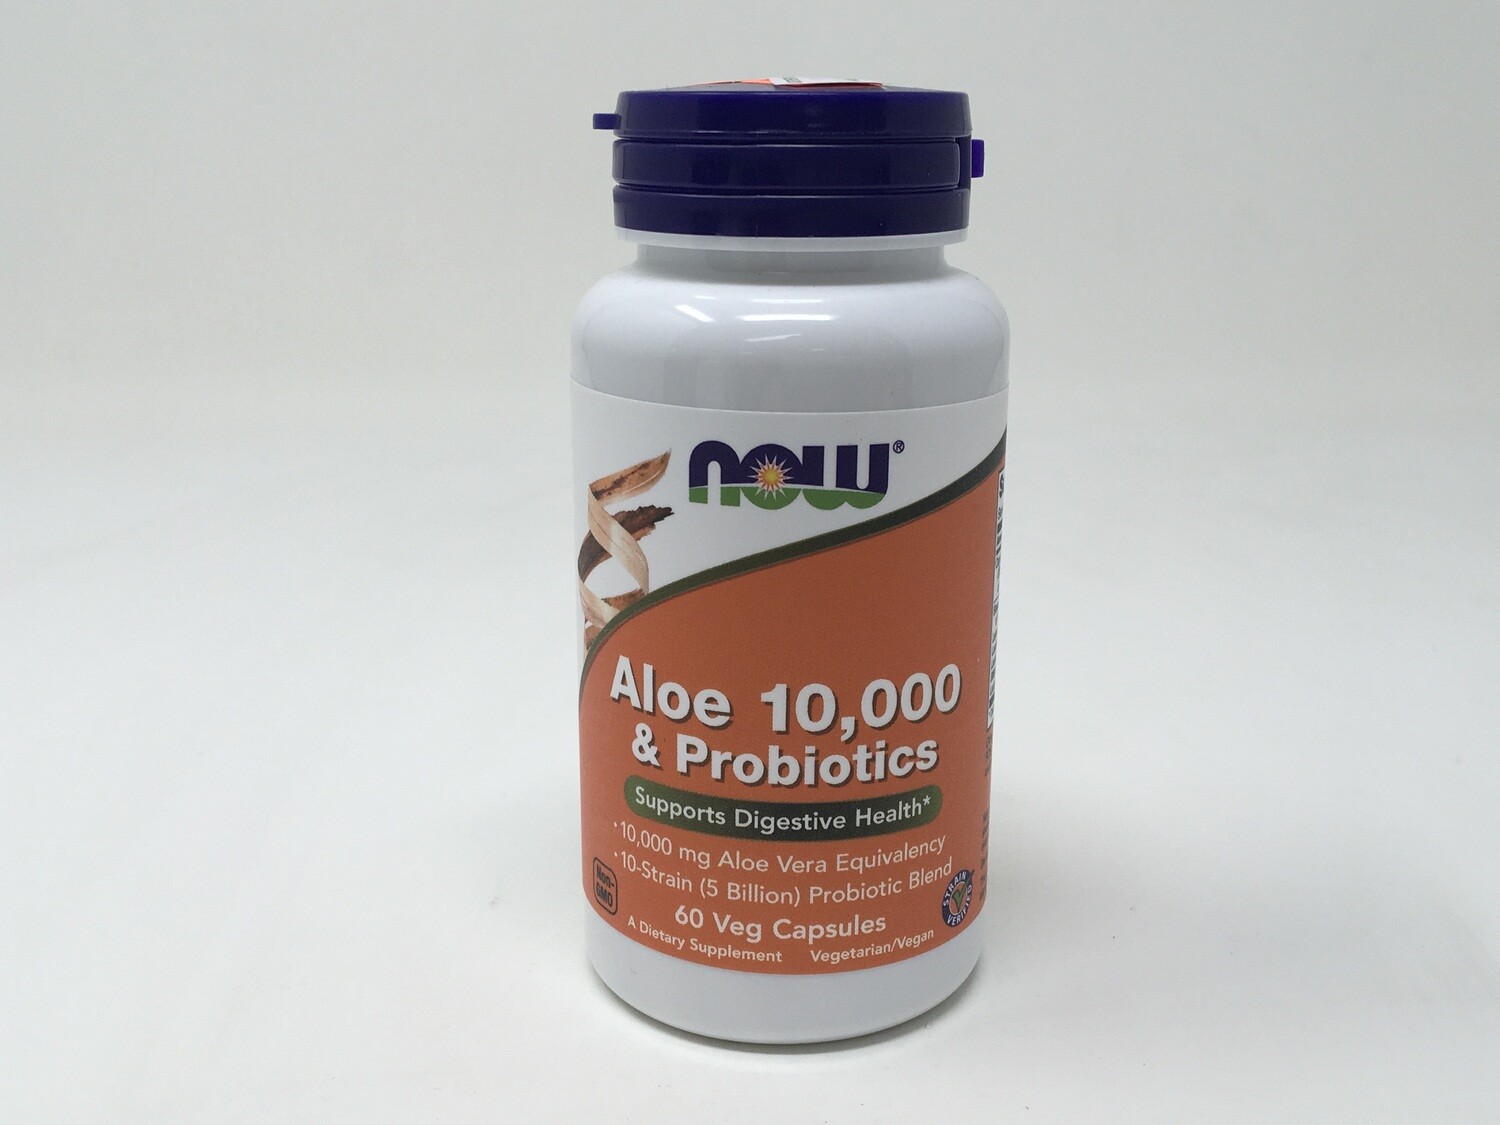 Aloe 10,000 & Probiotics (Now 3029)